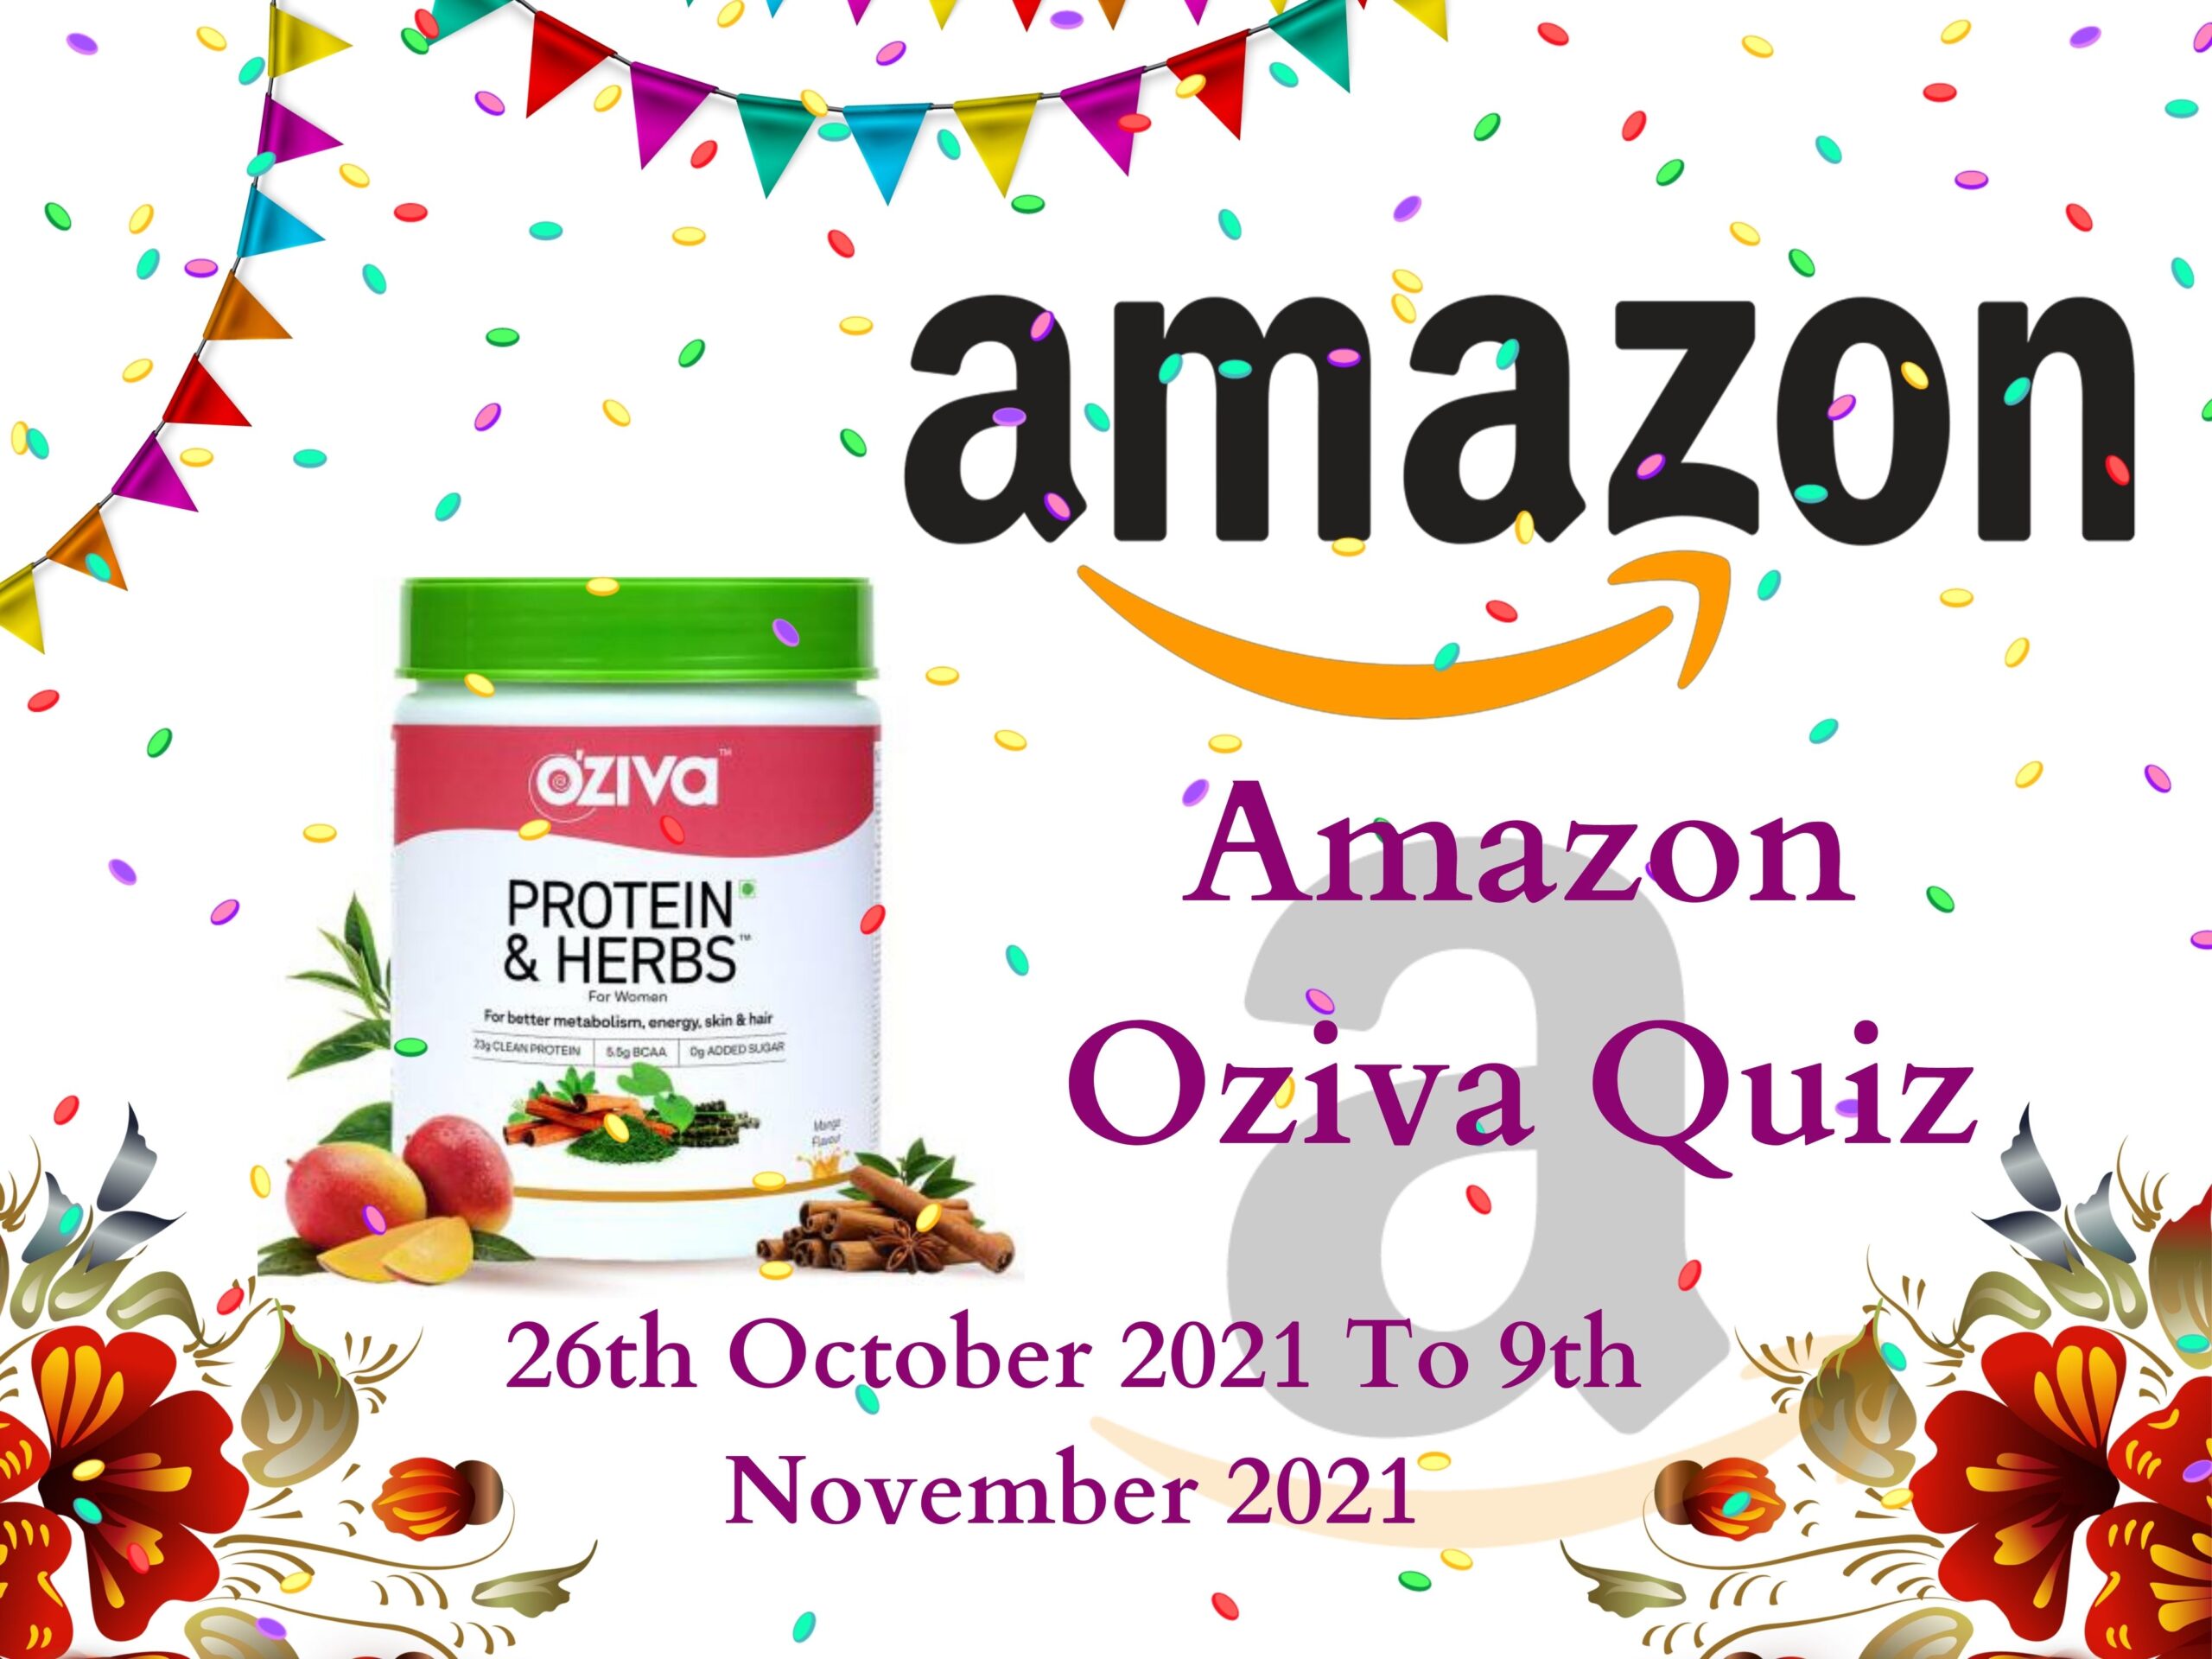 Amazon Oziva Quiz